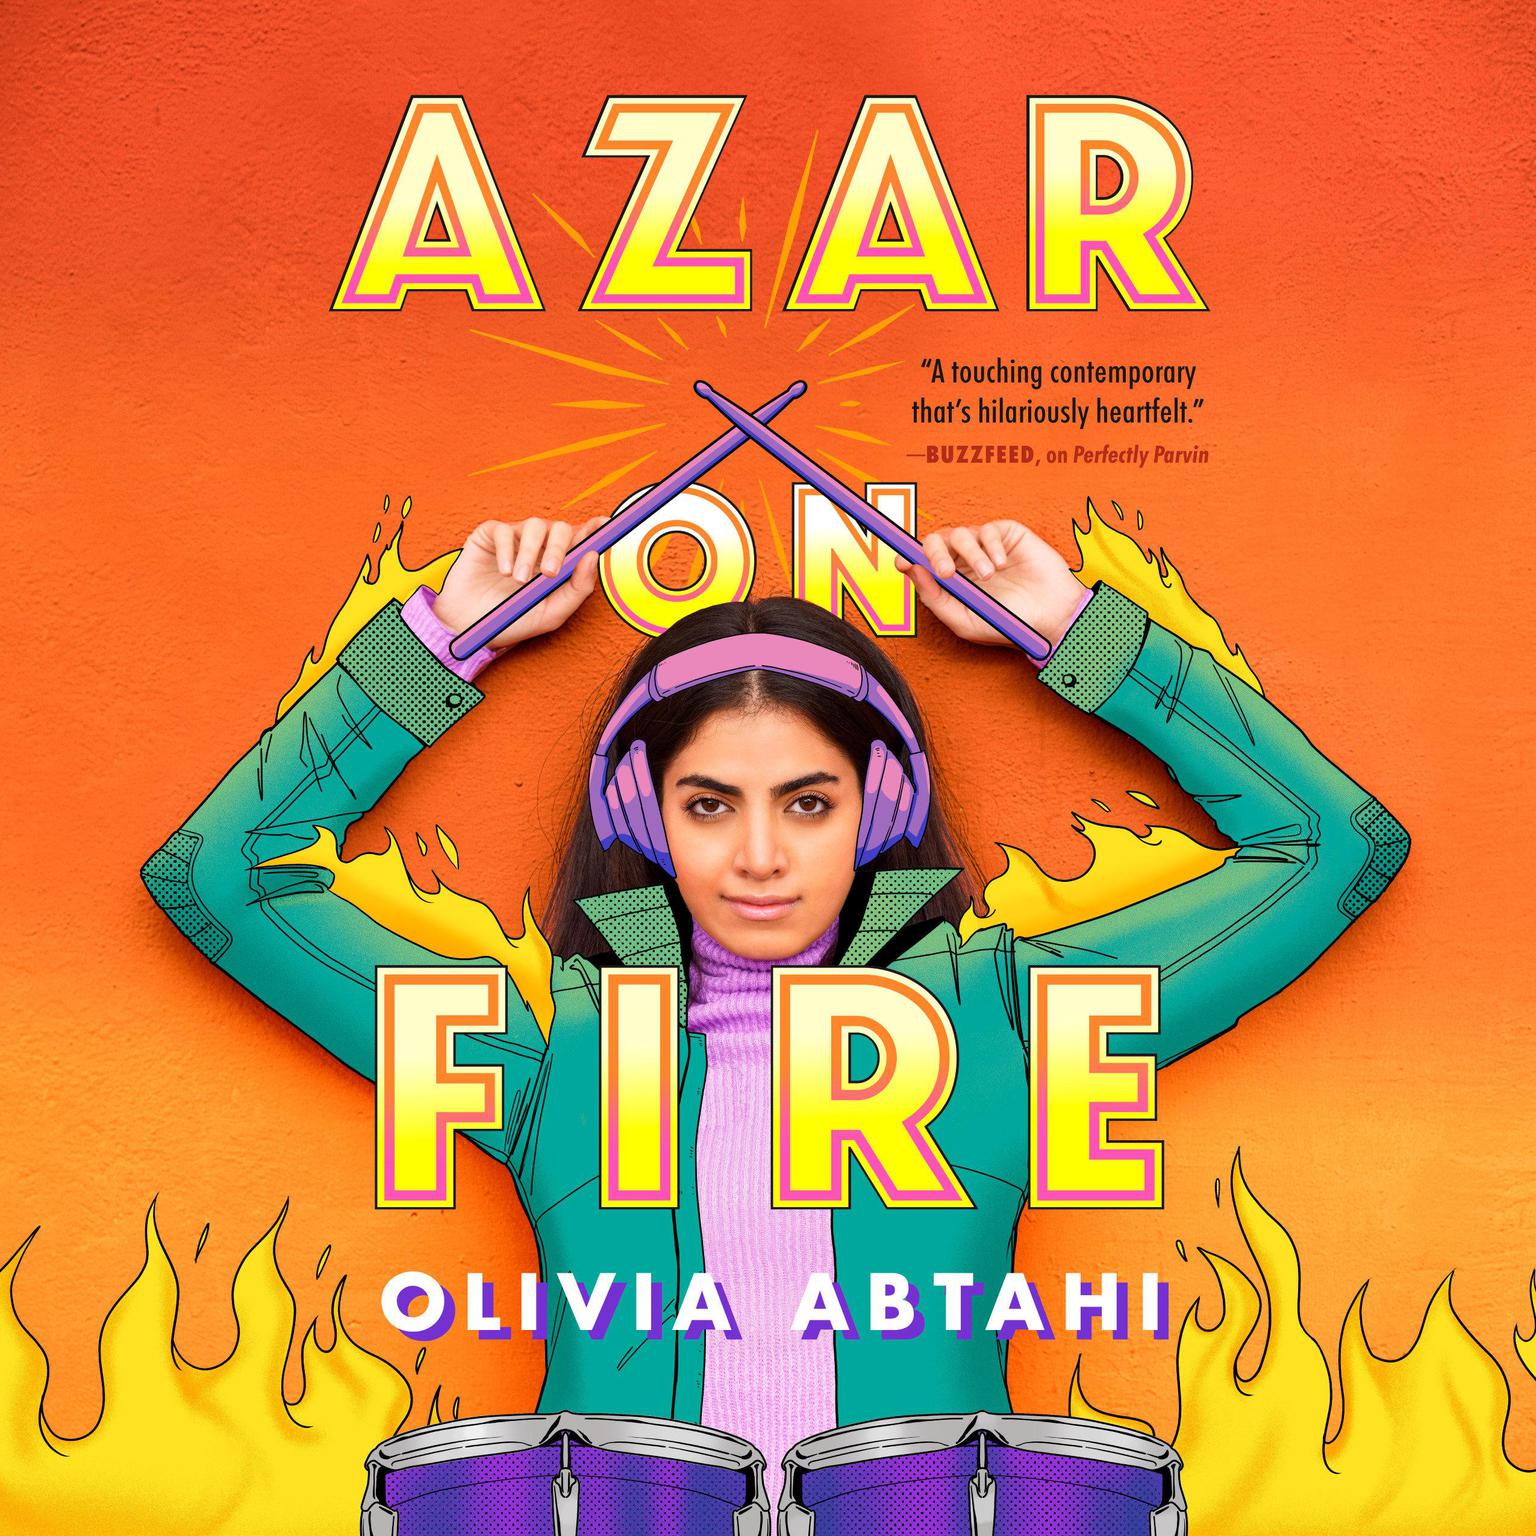 Azar on Fire Audiobook, by Olivia Abtahi